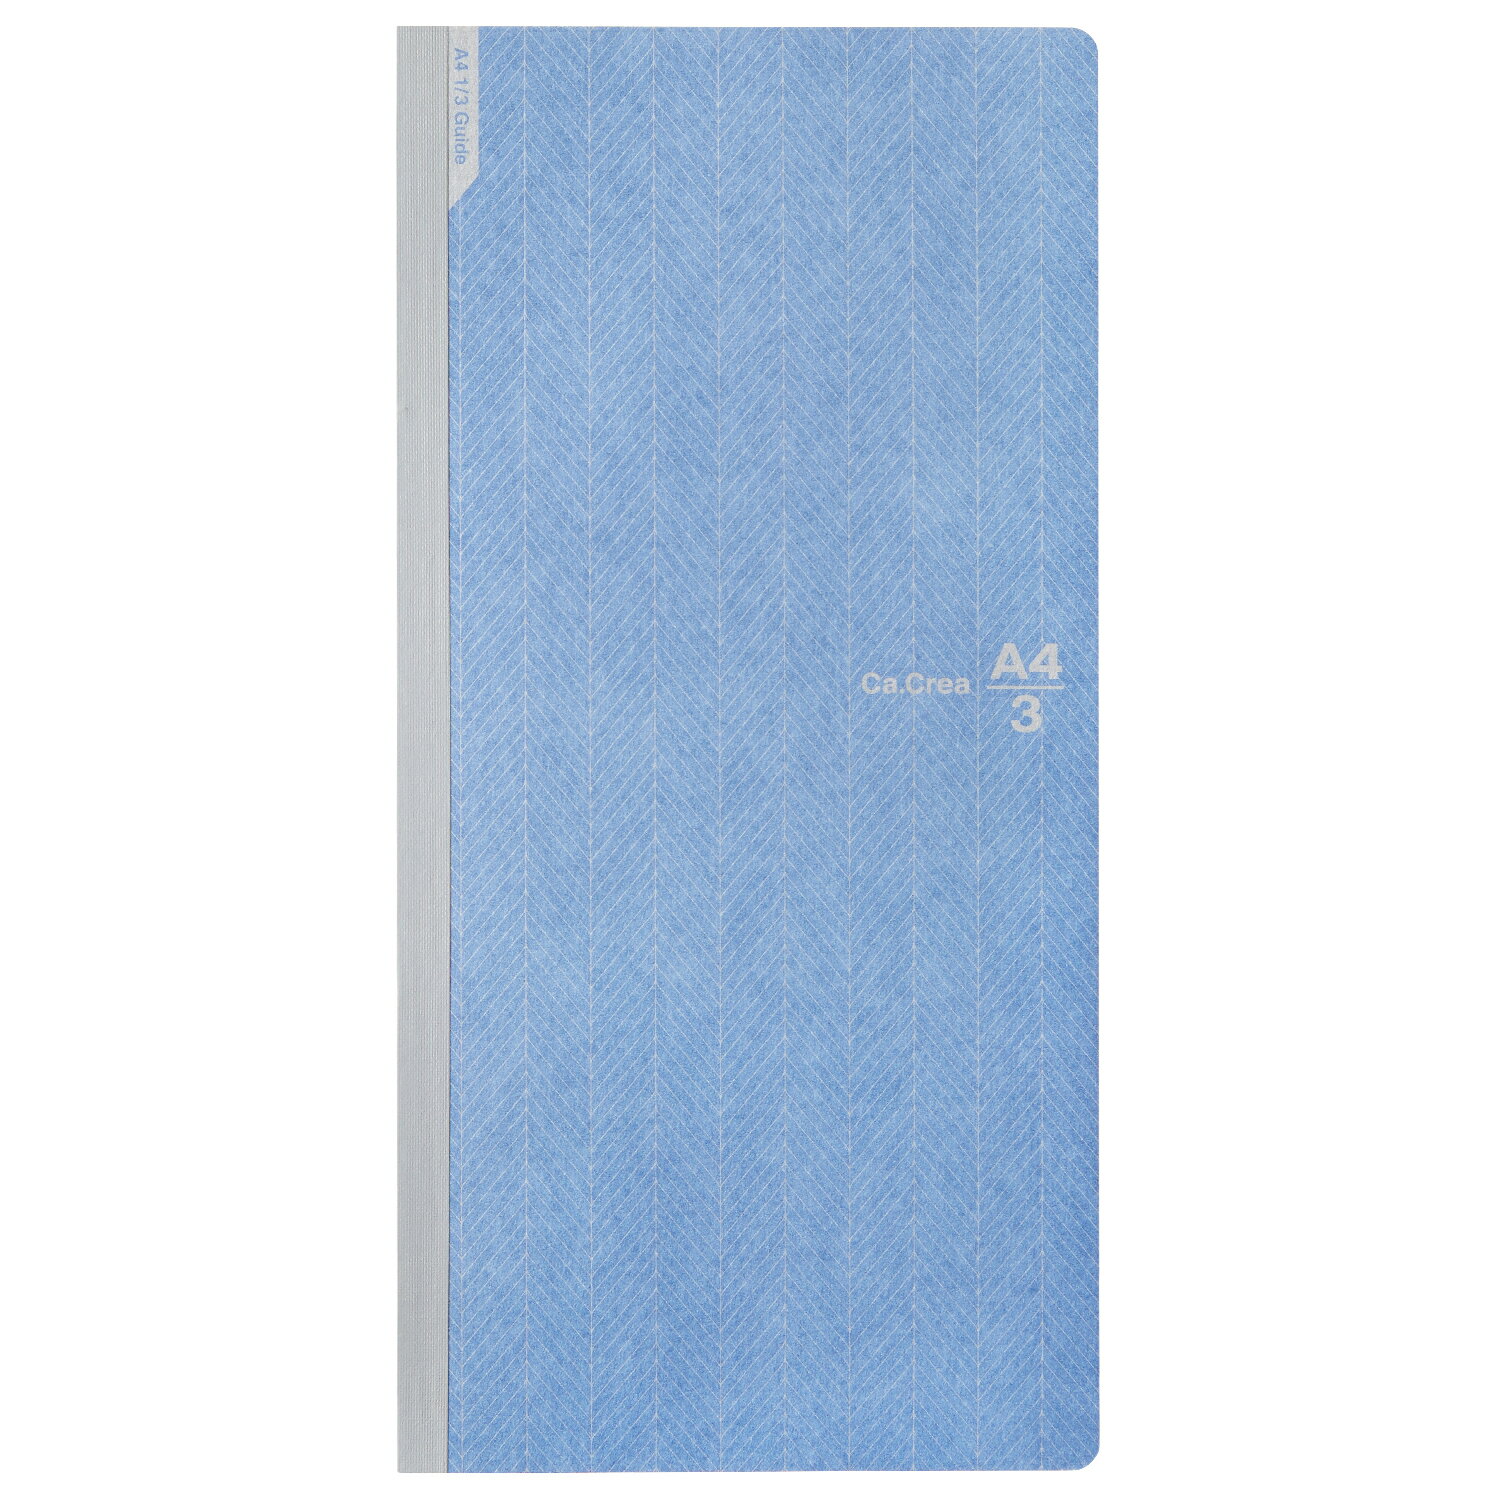 【PLUS】 5個セットカ.クリエ メモ帳 ノート A4×1/3 NSシリーズ 横罫 (ブルー) No.683DC(77761)